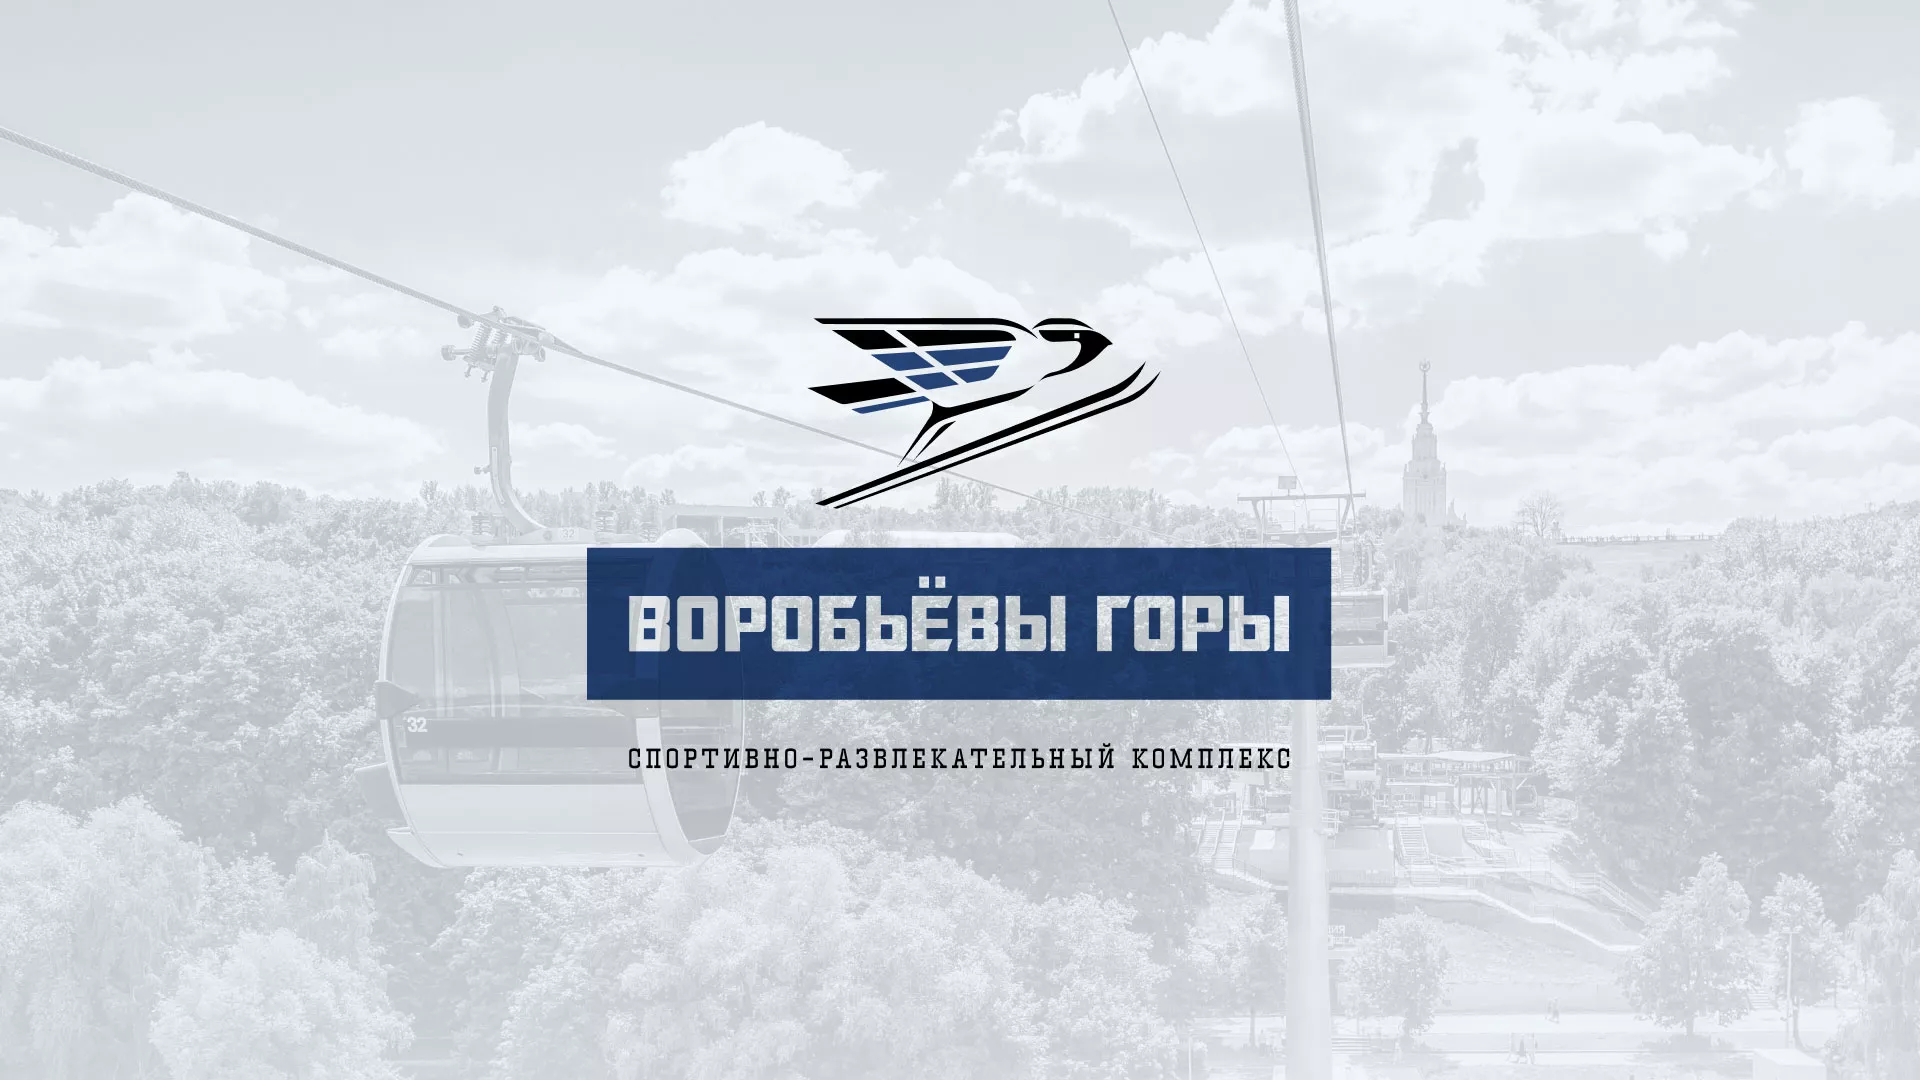 Разработка сайта в Болгаре для спортивно-развлекательного комплекса «Воробьёвы горы»